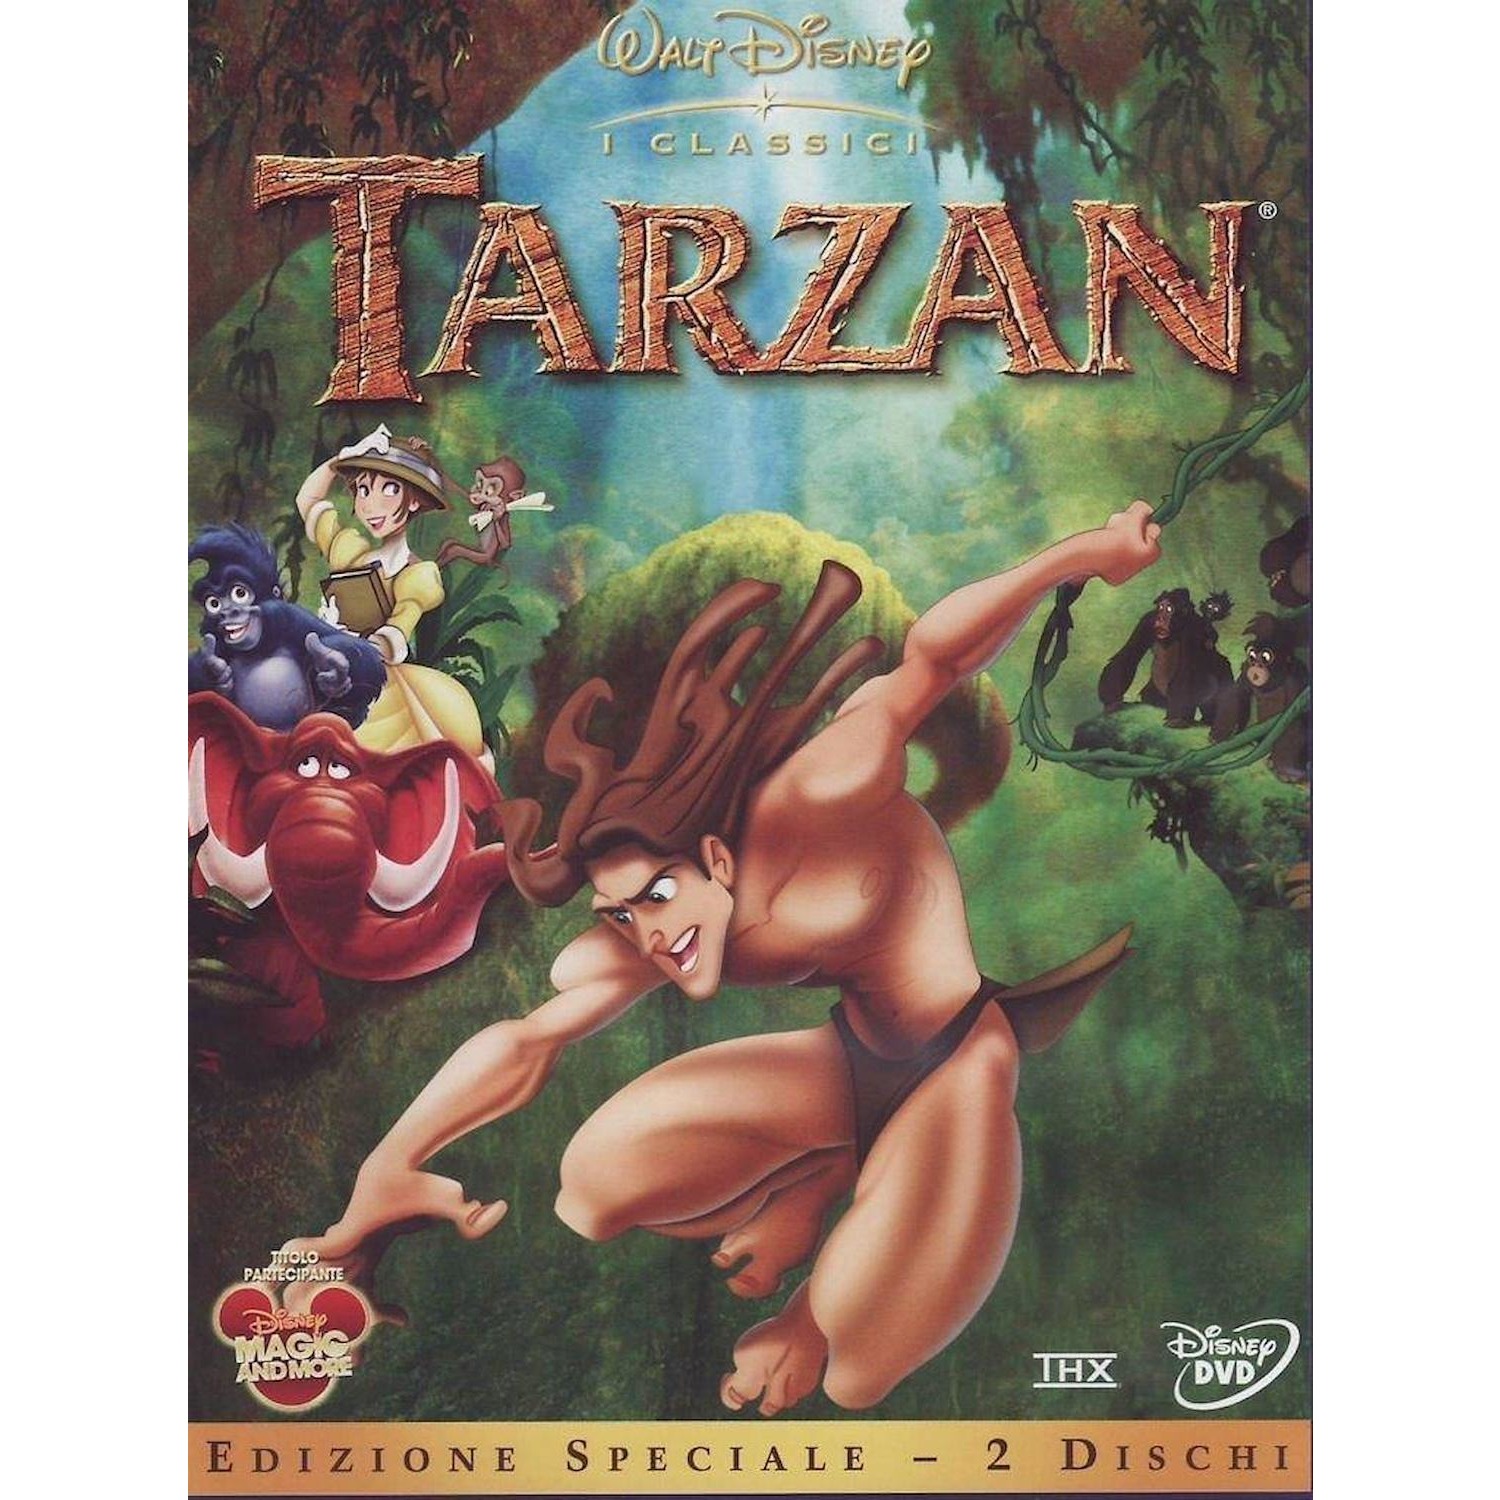 Immagine per DVD Tarzan da DIMOStore